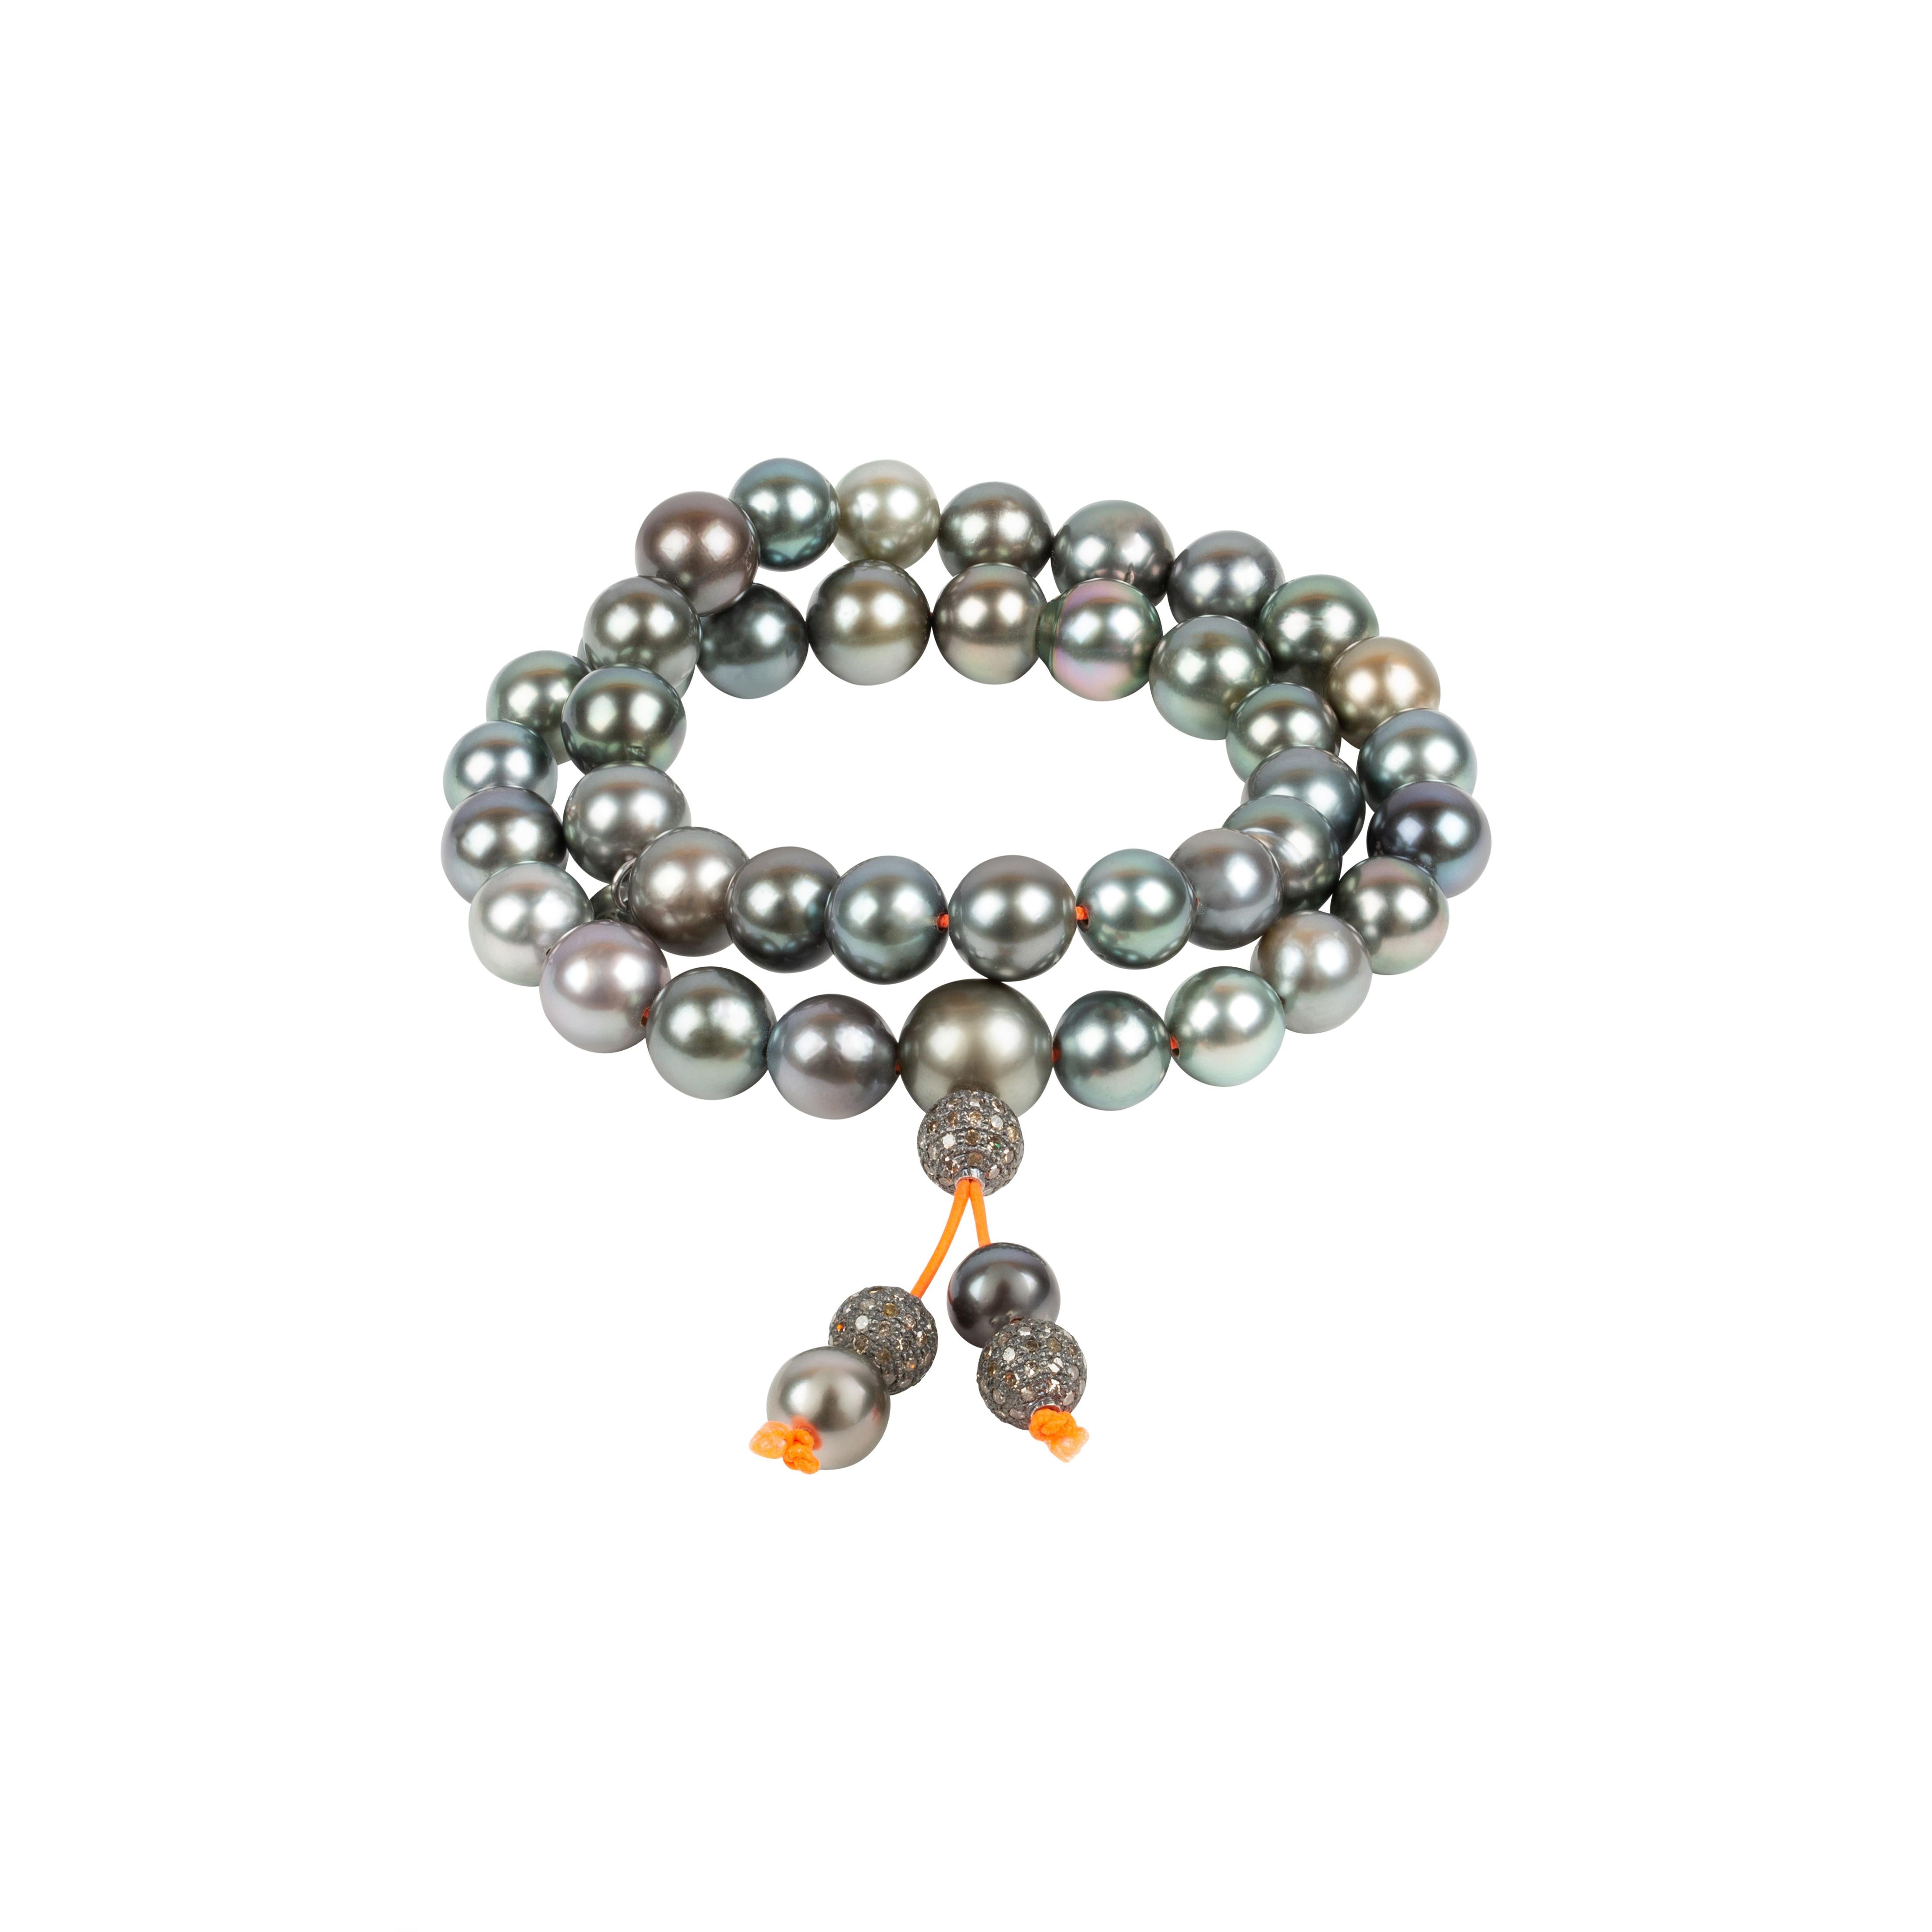 Ce bijou spécial s'inspire des colliers et bracelets de prière bouddhistes. 
Il peut être porté comme un collier plus court ou enroulé autour du poignet. Ses perles de Tahiti intrigantes sont captivantes, son élégance et sa décontraction sont